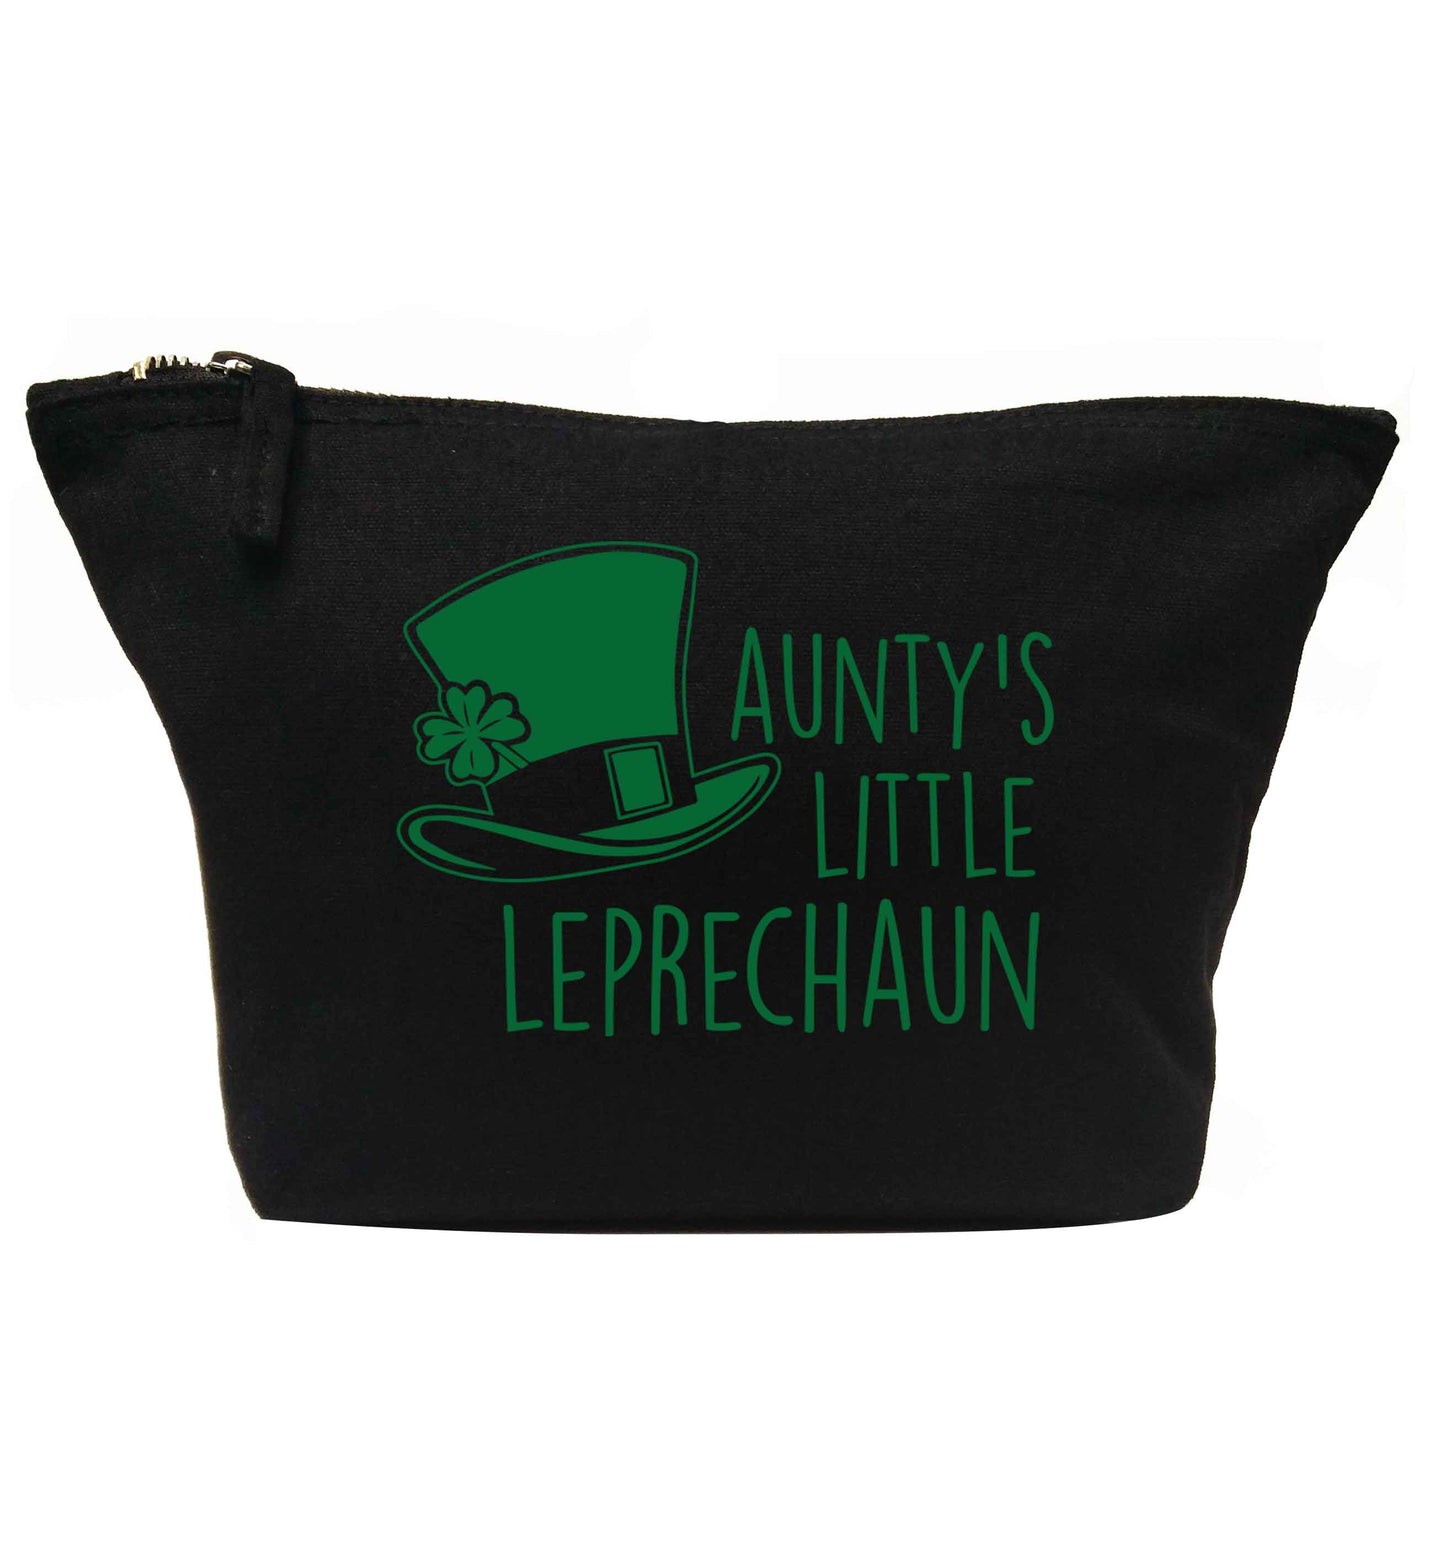 Aunty's little leprechaun | Makeup / wash bag